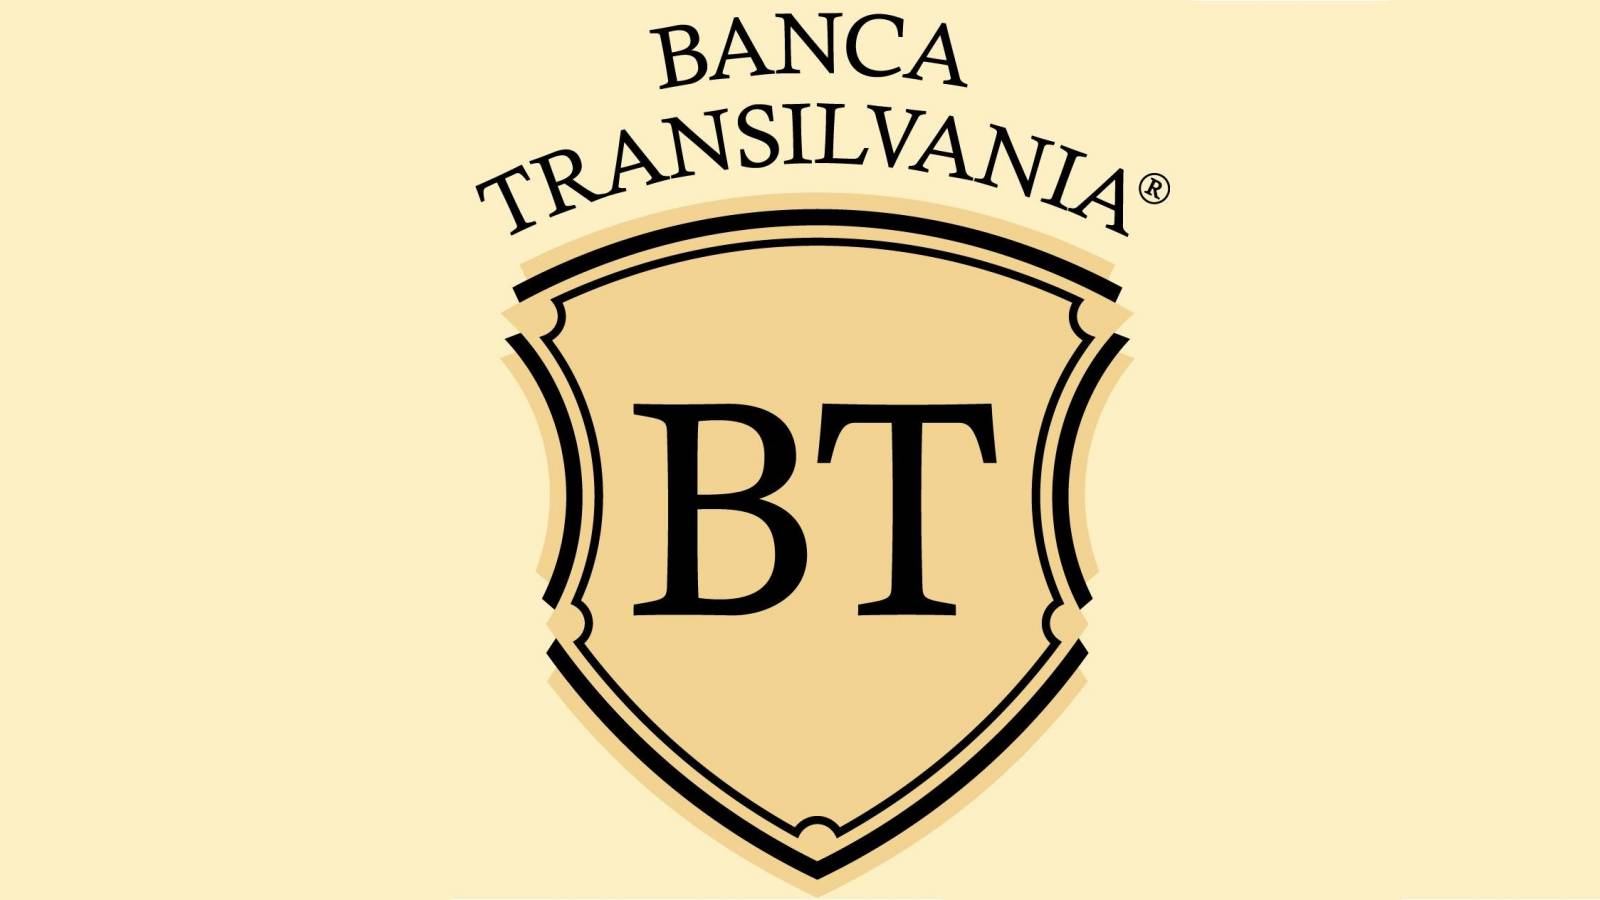 BANCA Transilvania Officiel LAST MOMENT Information sendt til kunder over hele Rumænien